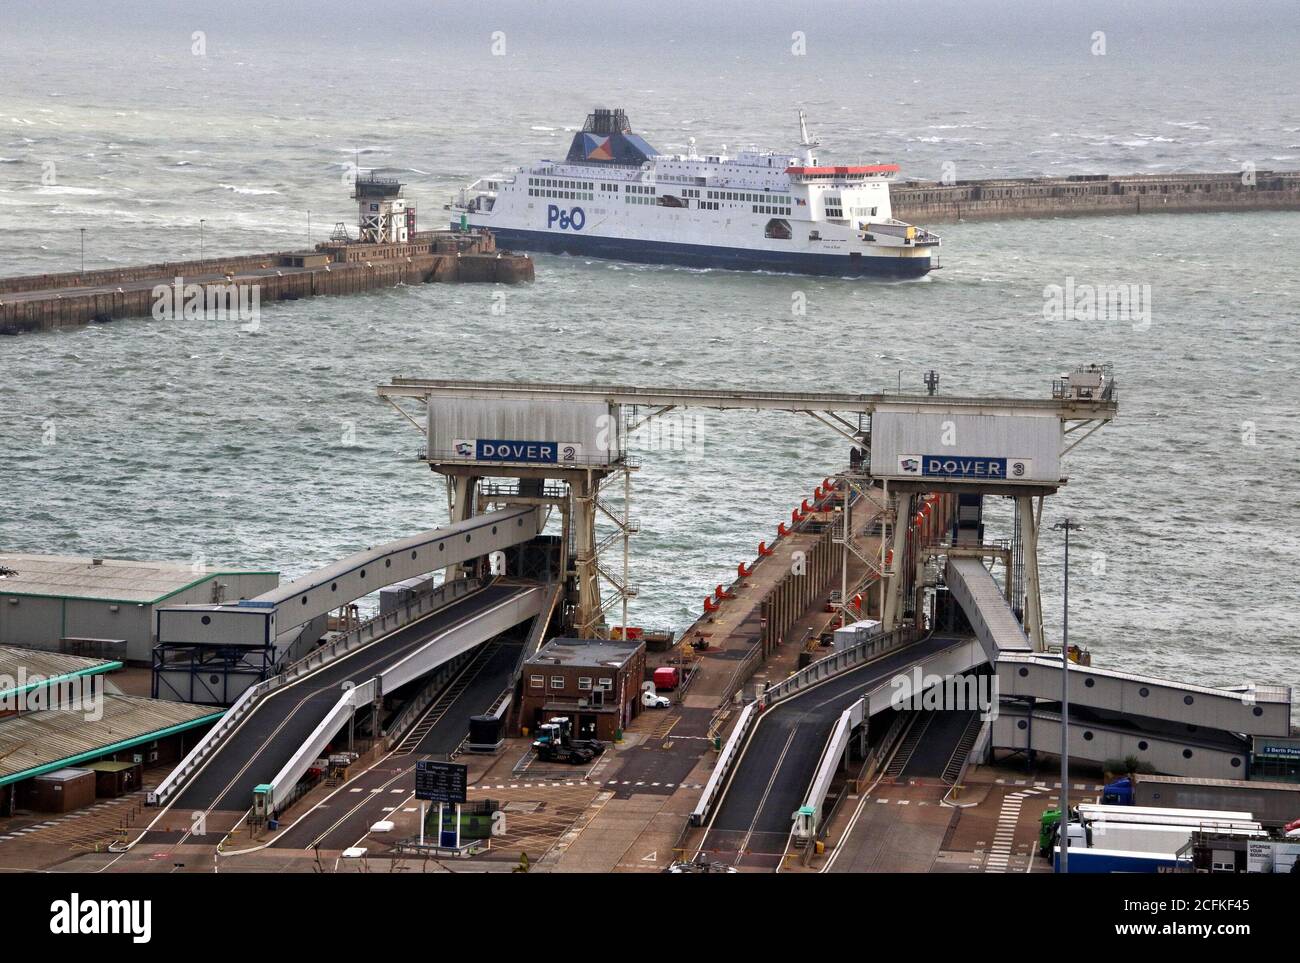 Dover, Royaume-Uni. 03ème septembre 2020. Un ferry P&O arrive au port. Très peu de signes d'autre chose que le fret de camion au terminal de Douvres. Aucun passager à pied ou voiture ne semble s'embarquer ou débarquer avec le récent besoin de s'isoler lors de son retour de France qui semble avoir frappé Douvres durement. Le principal port de ferry du Royaume-Uni a été frappé deux fois cette année. Tout d'abord, l'incertitude continue sur la manière dont le Brexit va affecter le commerce européen et maintenant les restrictions de quarantaine Covid-19 qui ont été mises en place il y a quinze jours. Crédit : SOPA Images Limited/Alamy Live News Banque D'Images